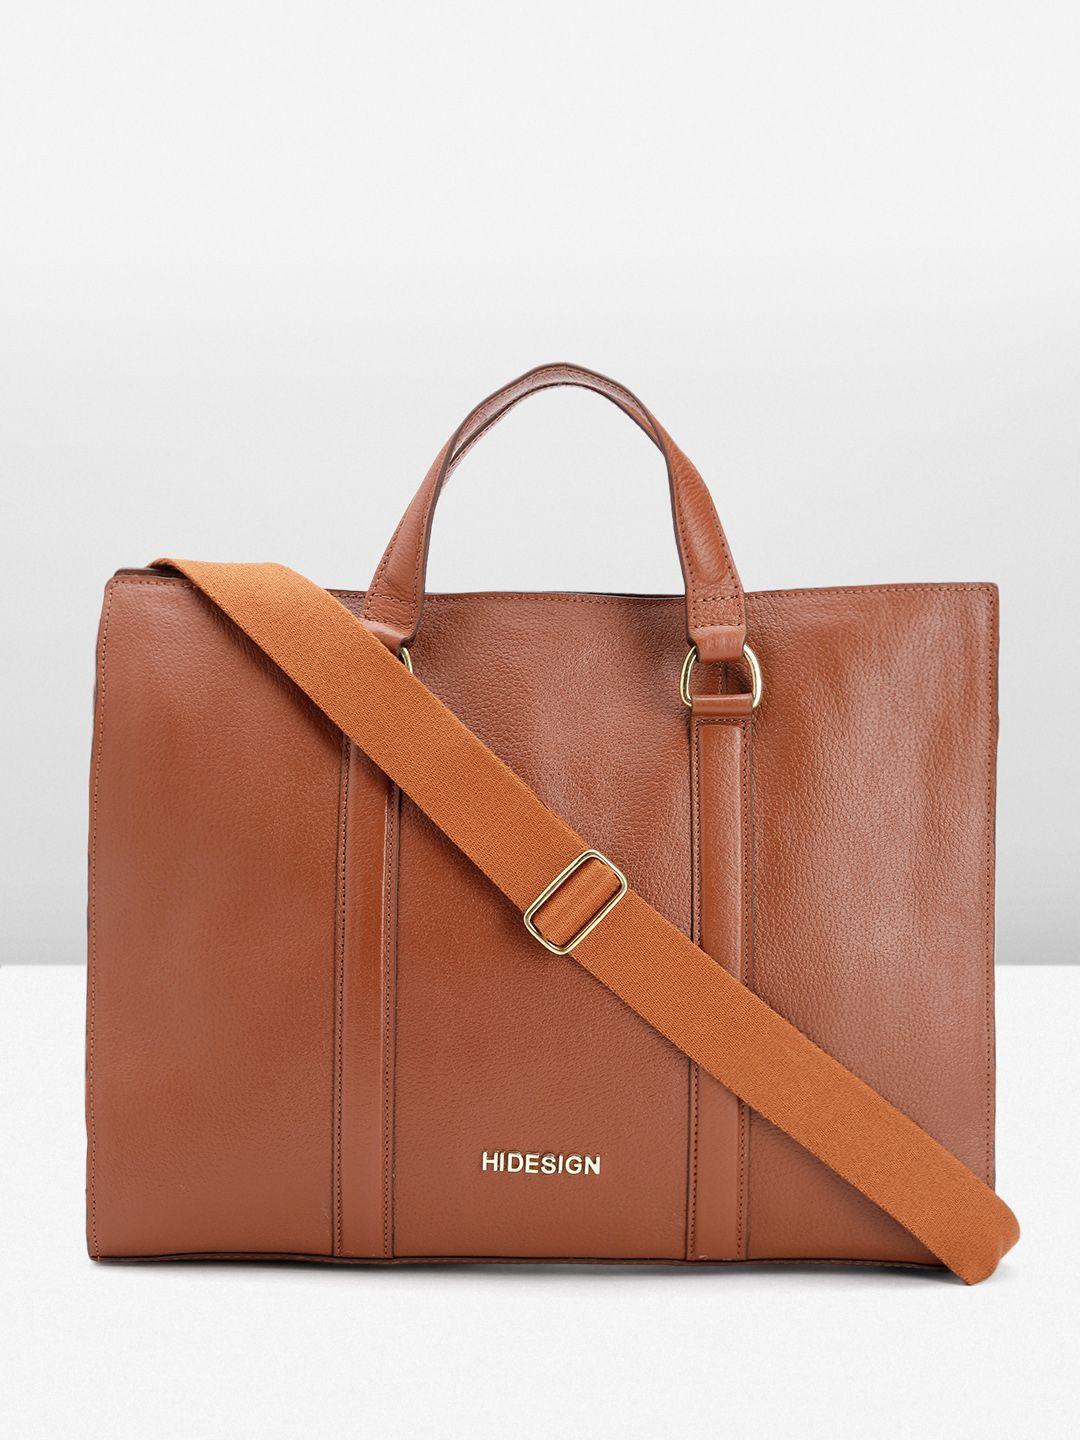 hidesign-men-leather-messenger-bag